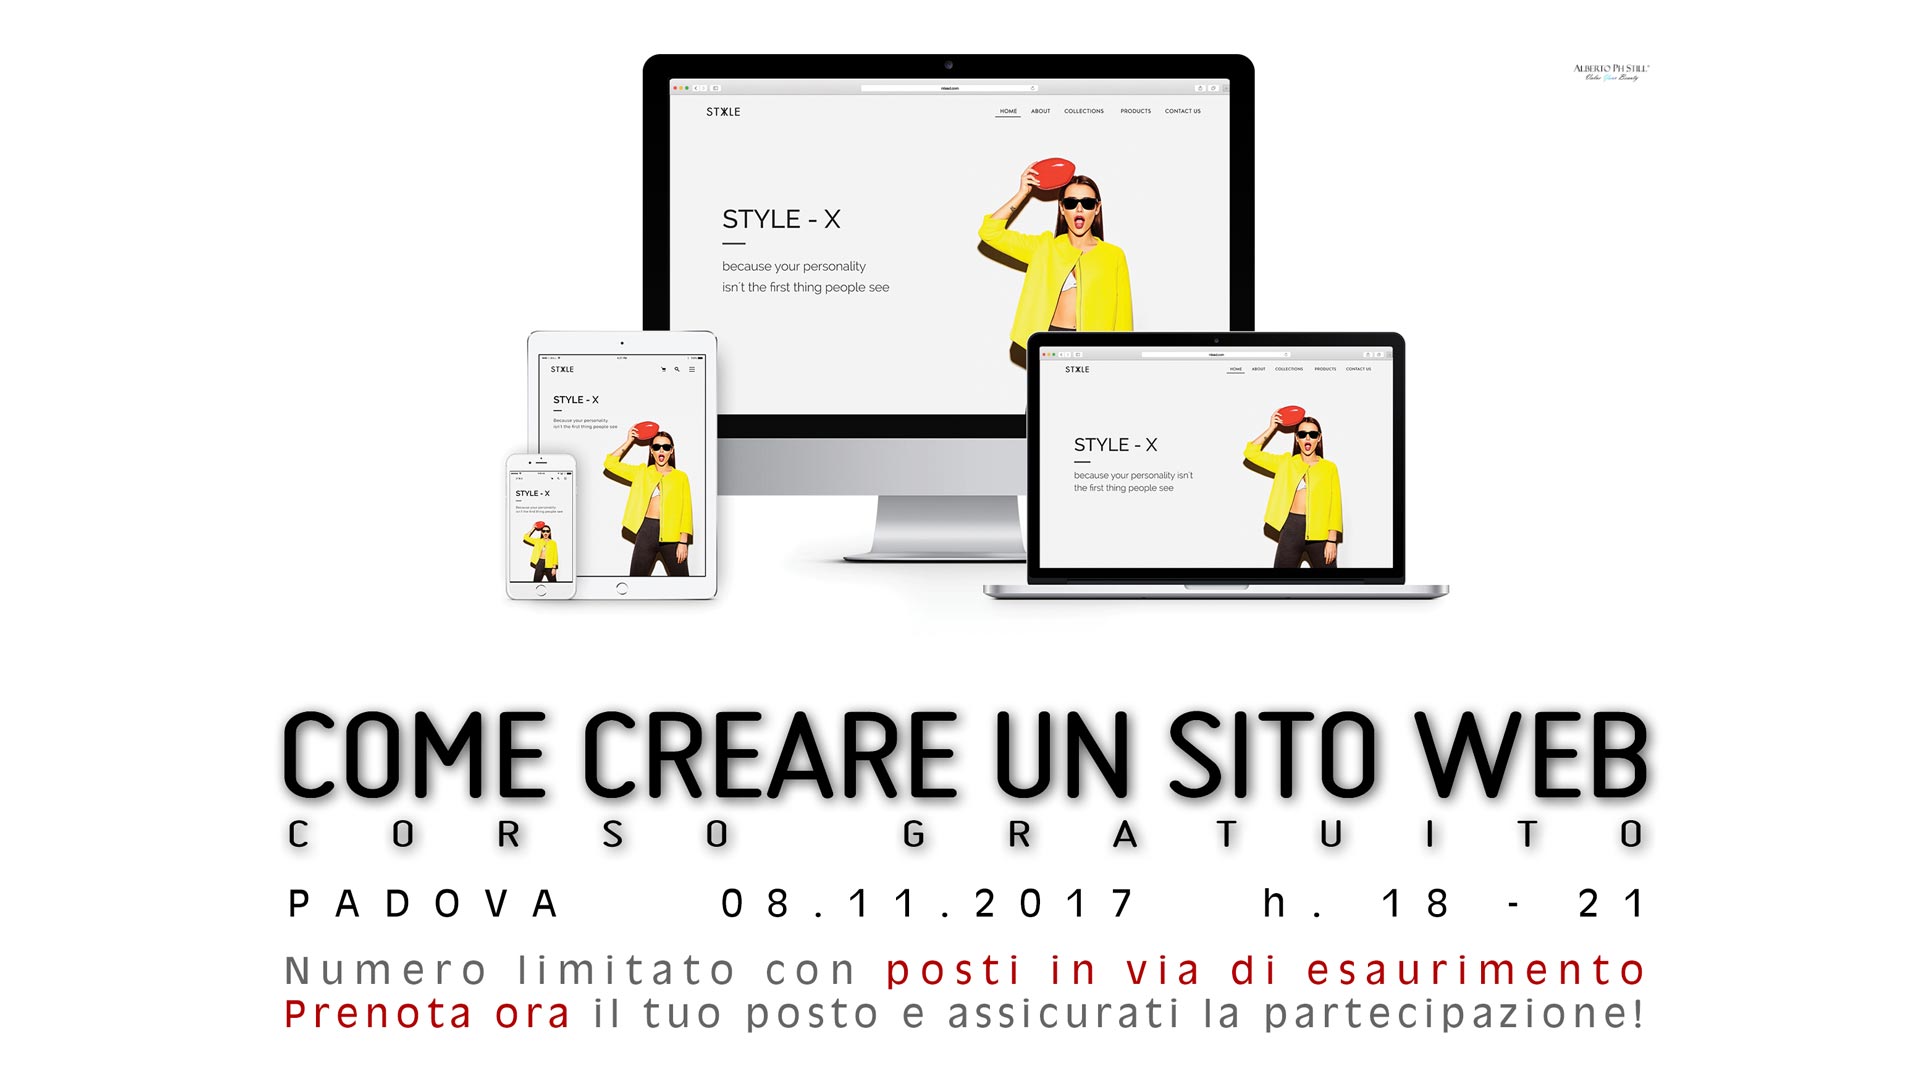 Come creare un sito web corso gratuito Padova by Alberto Still